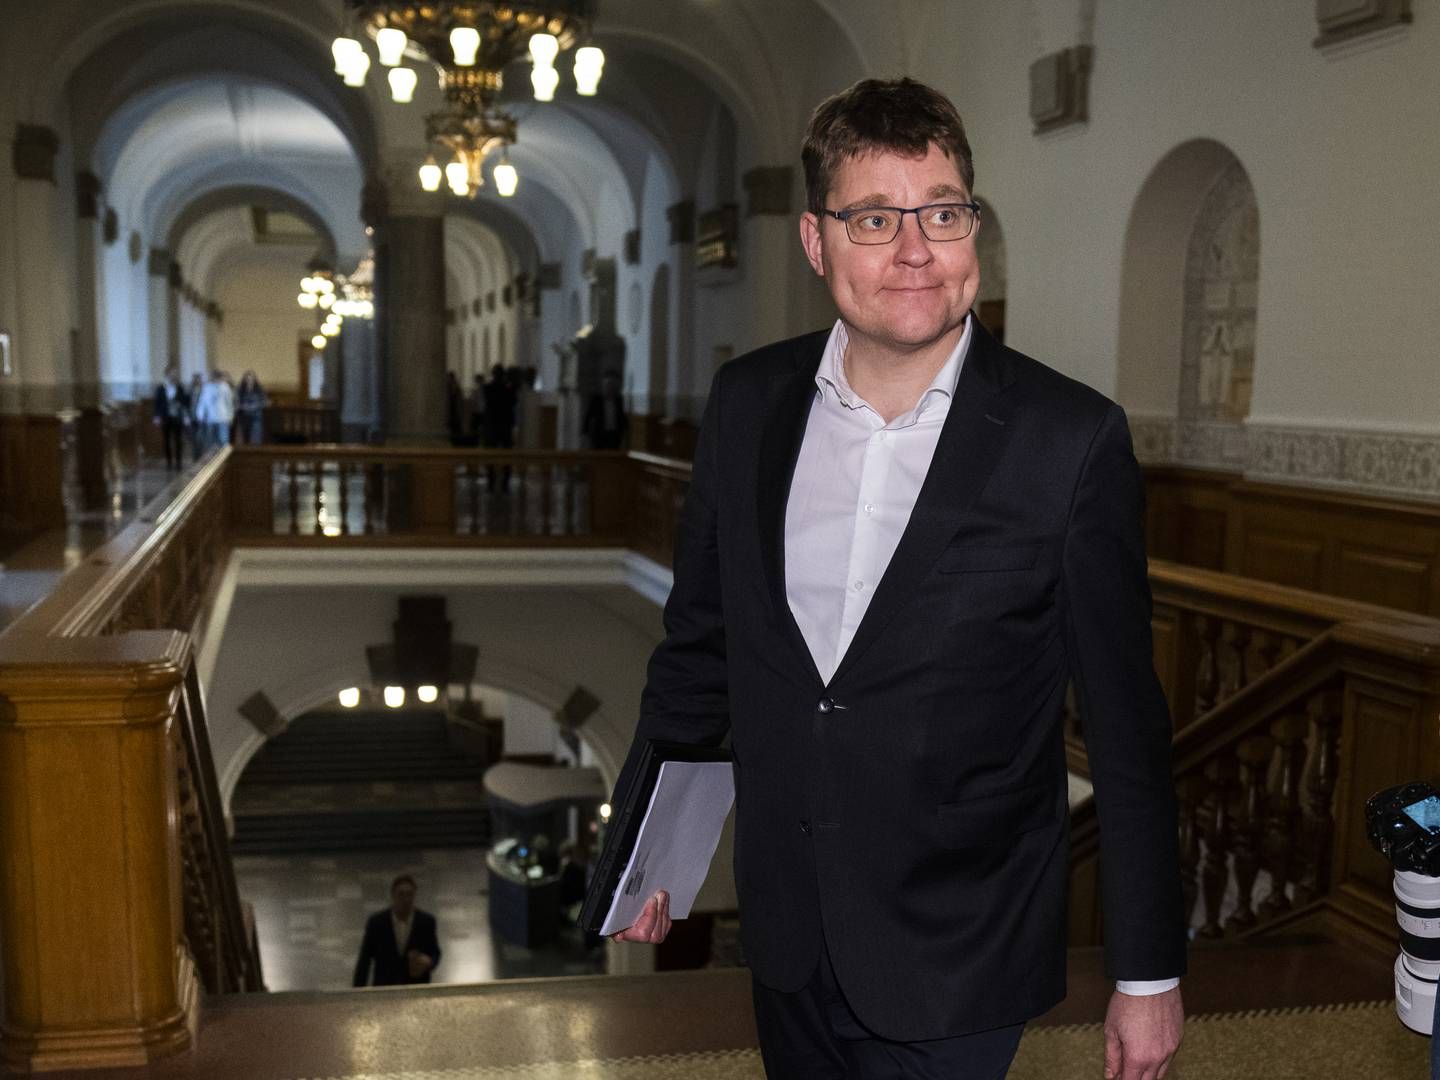 Transportordfører for Radikale Venstre, Rasmus Helveg Petersen. | Foto: Martin Sylvest